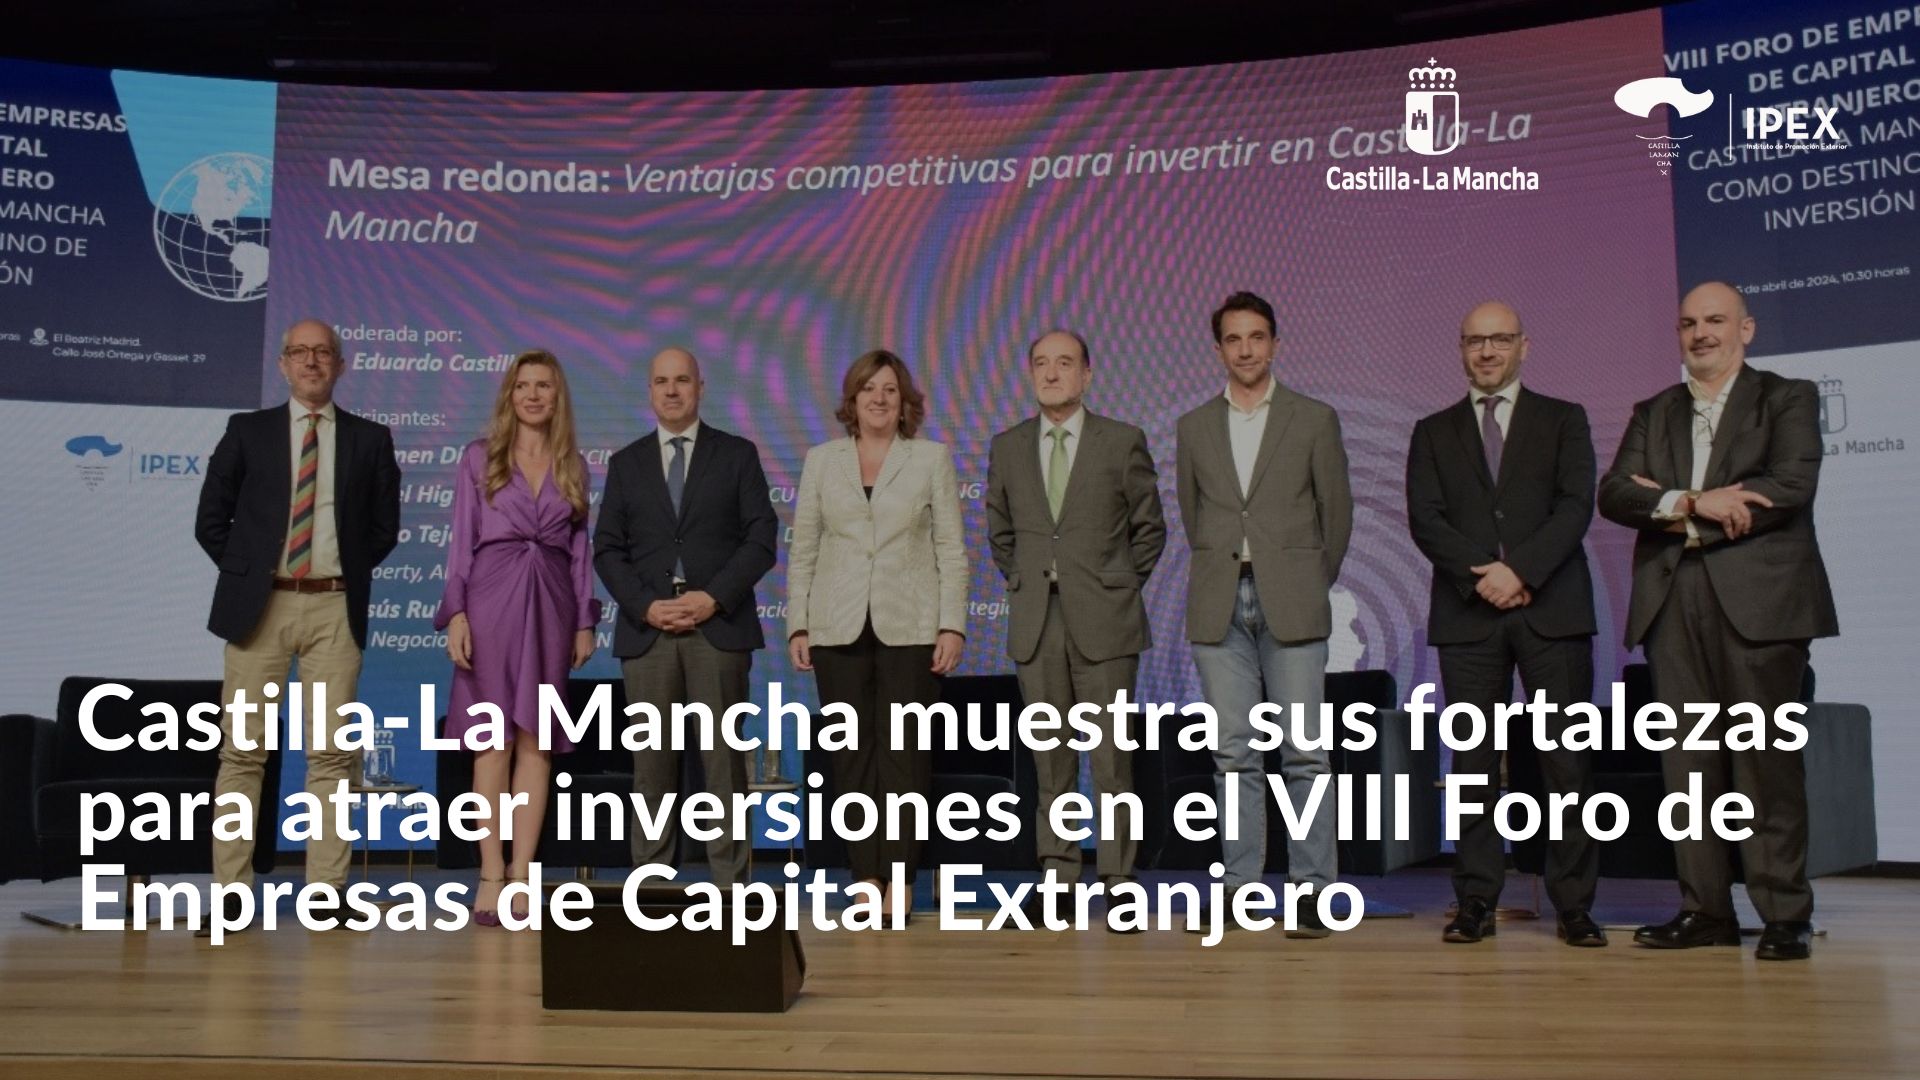 Castilla-La Mancha muestra sus fortalezas para atraer inversiones en el VIII Foro de Empresas de Capital Extranjero